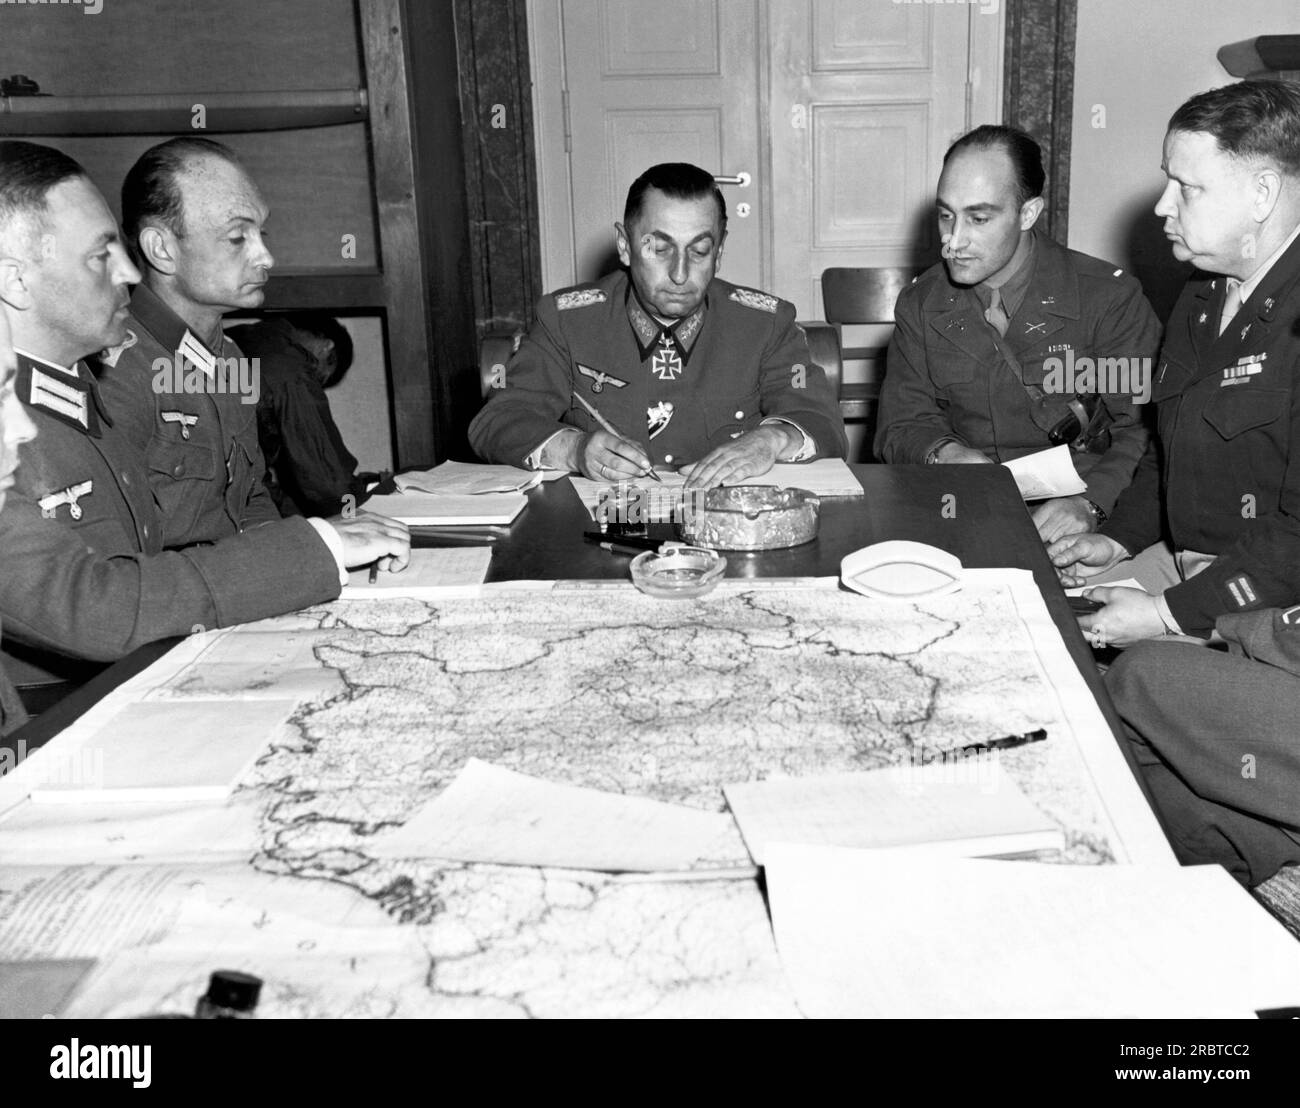 Haar, Germania: 5 maggio 1945 il generale tedesco Hermann Foertsch, comandante della i Armata tedesca, firma la resa incondizionata del gruppo d'armate tedesco G. Foto Stock